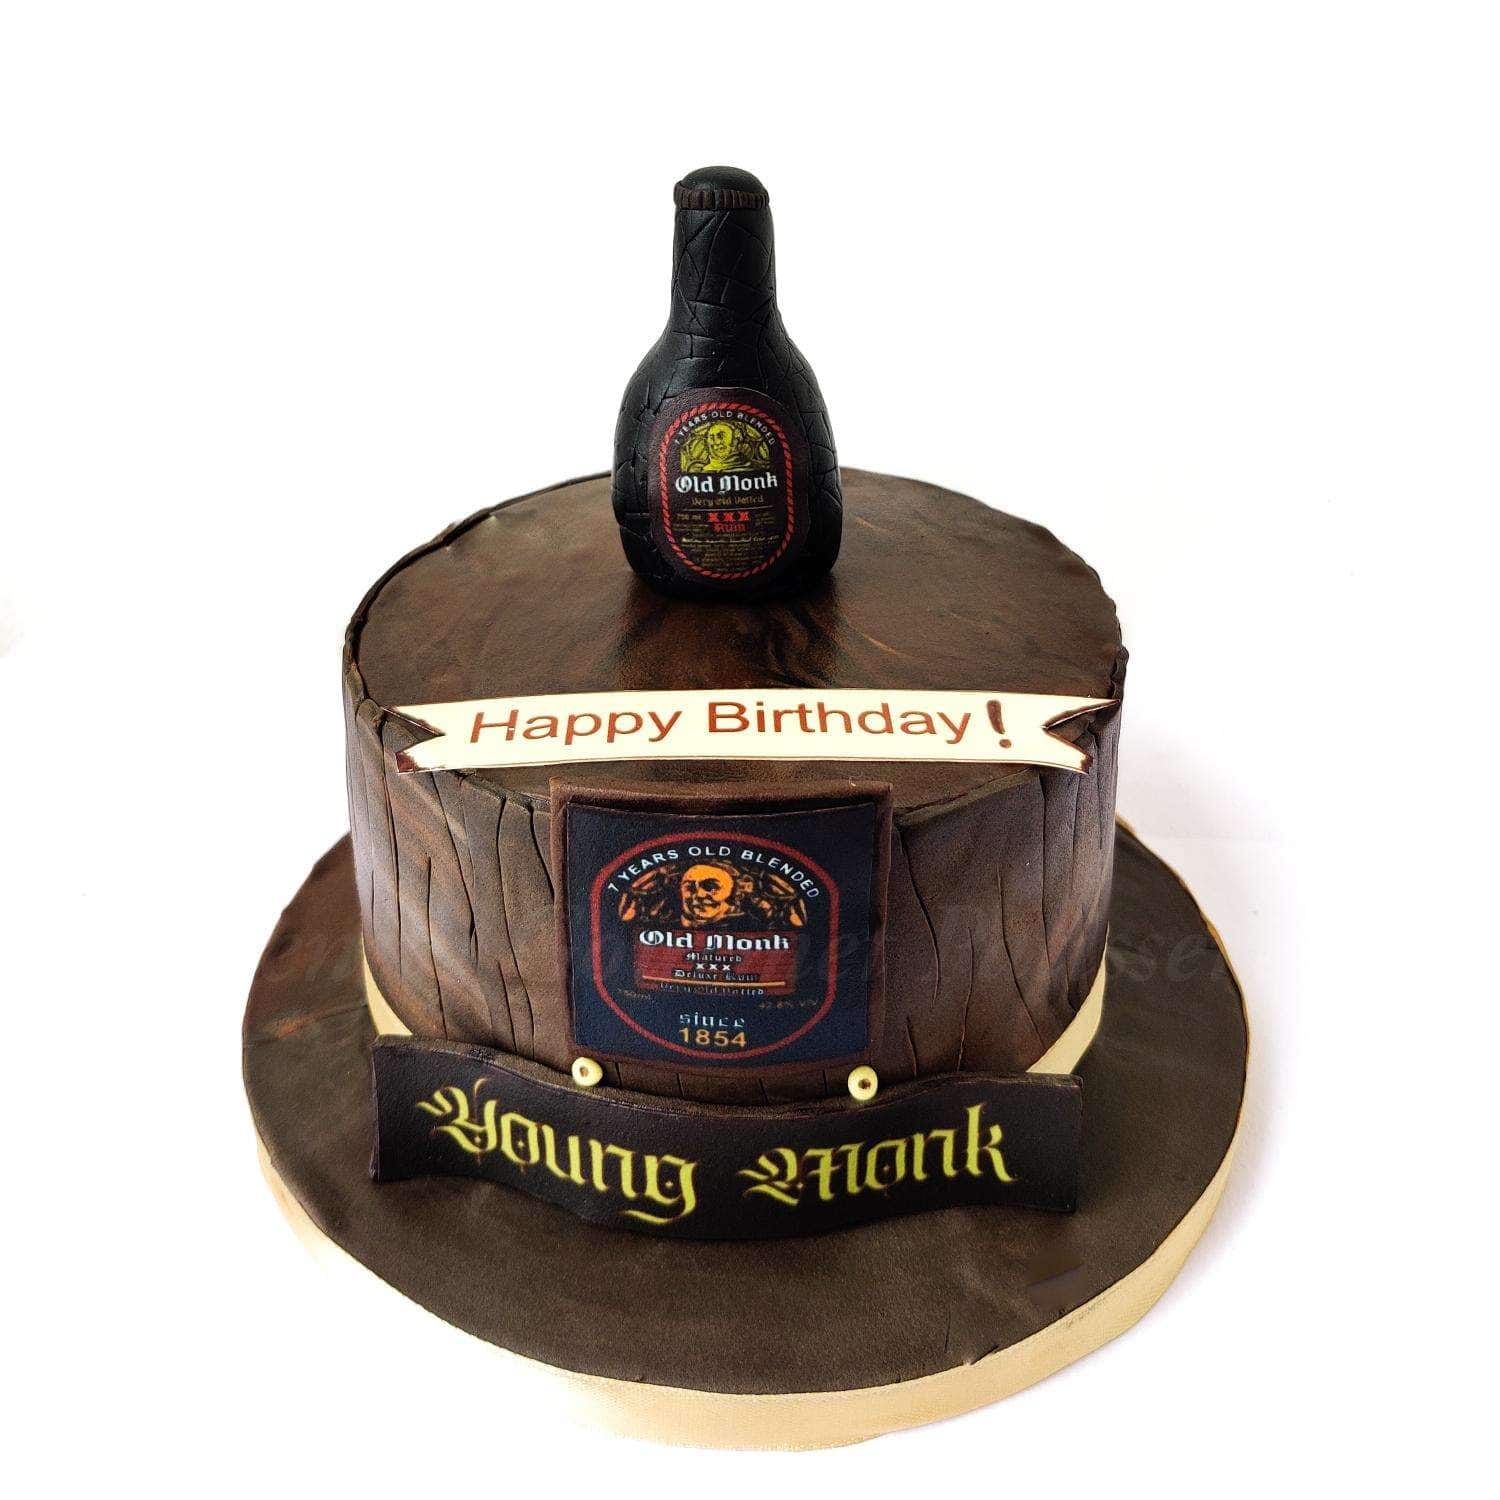 Old Monk Bottle Cake | Bottle Cake | Cake Recipe | Easy Bottle Cake |  Seema's Kitchen - YouTube